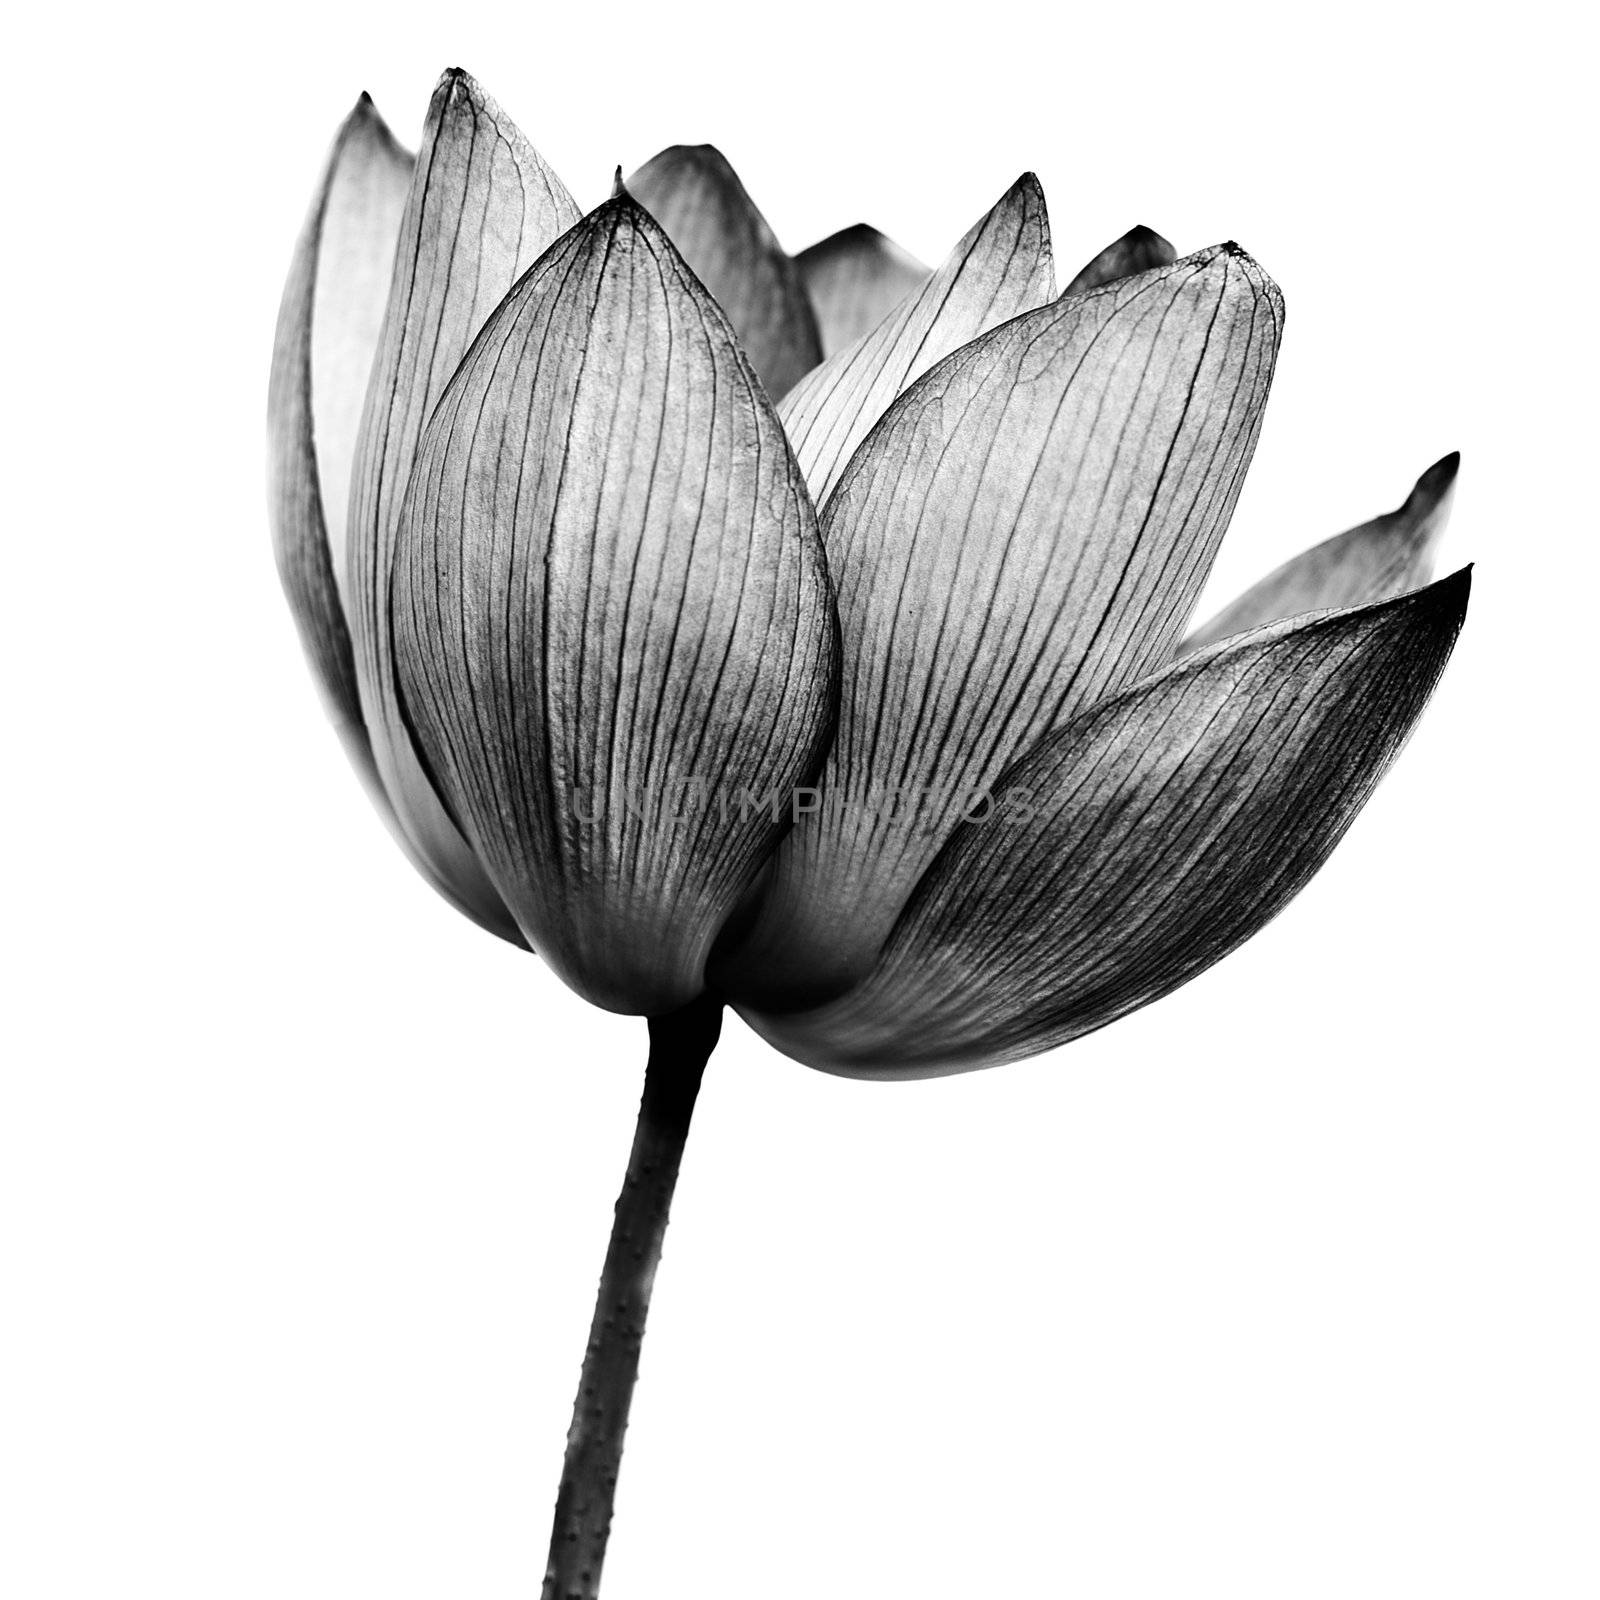 lotus by elwynn